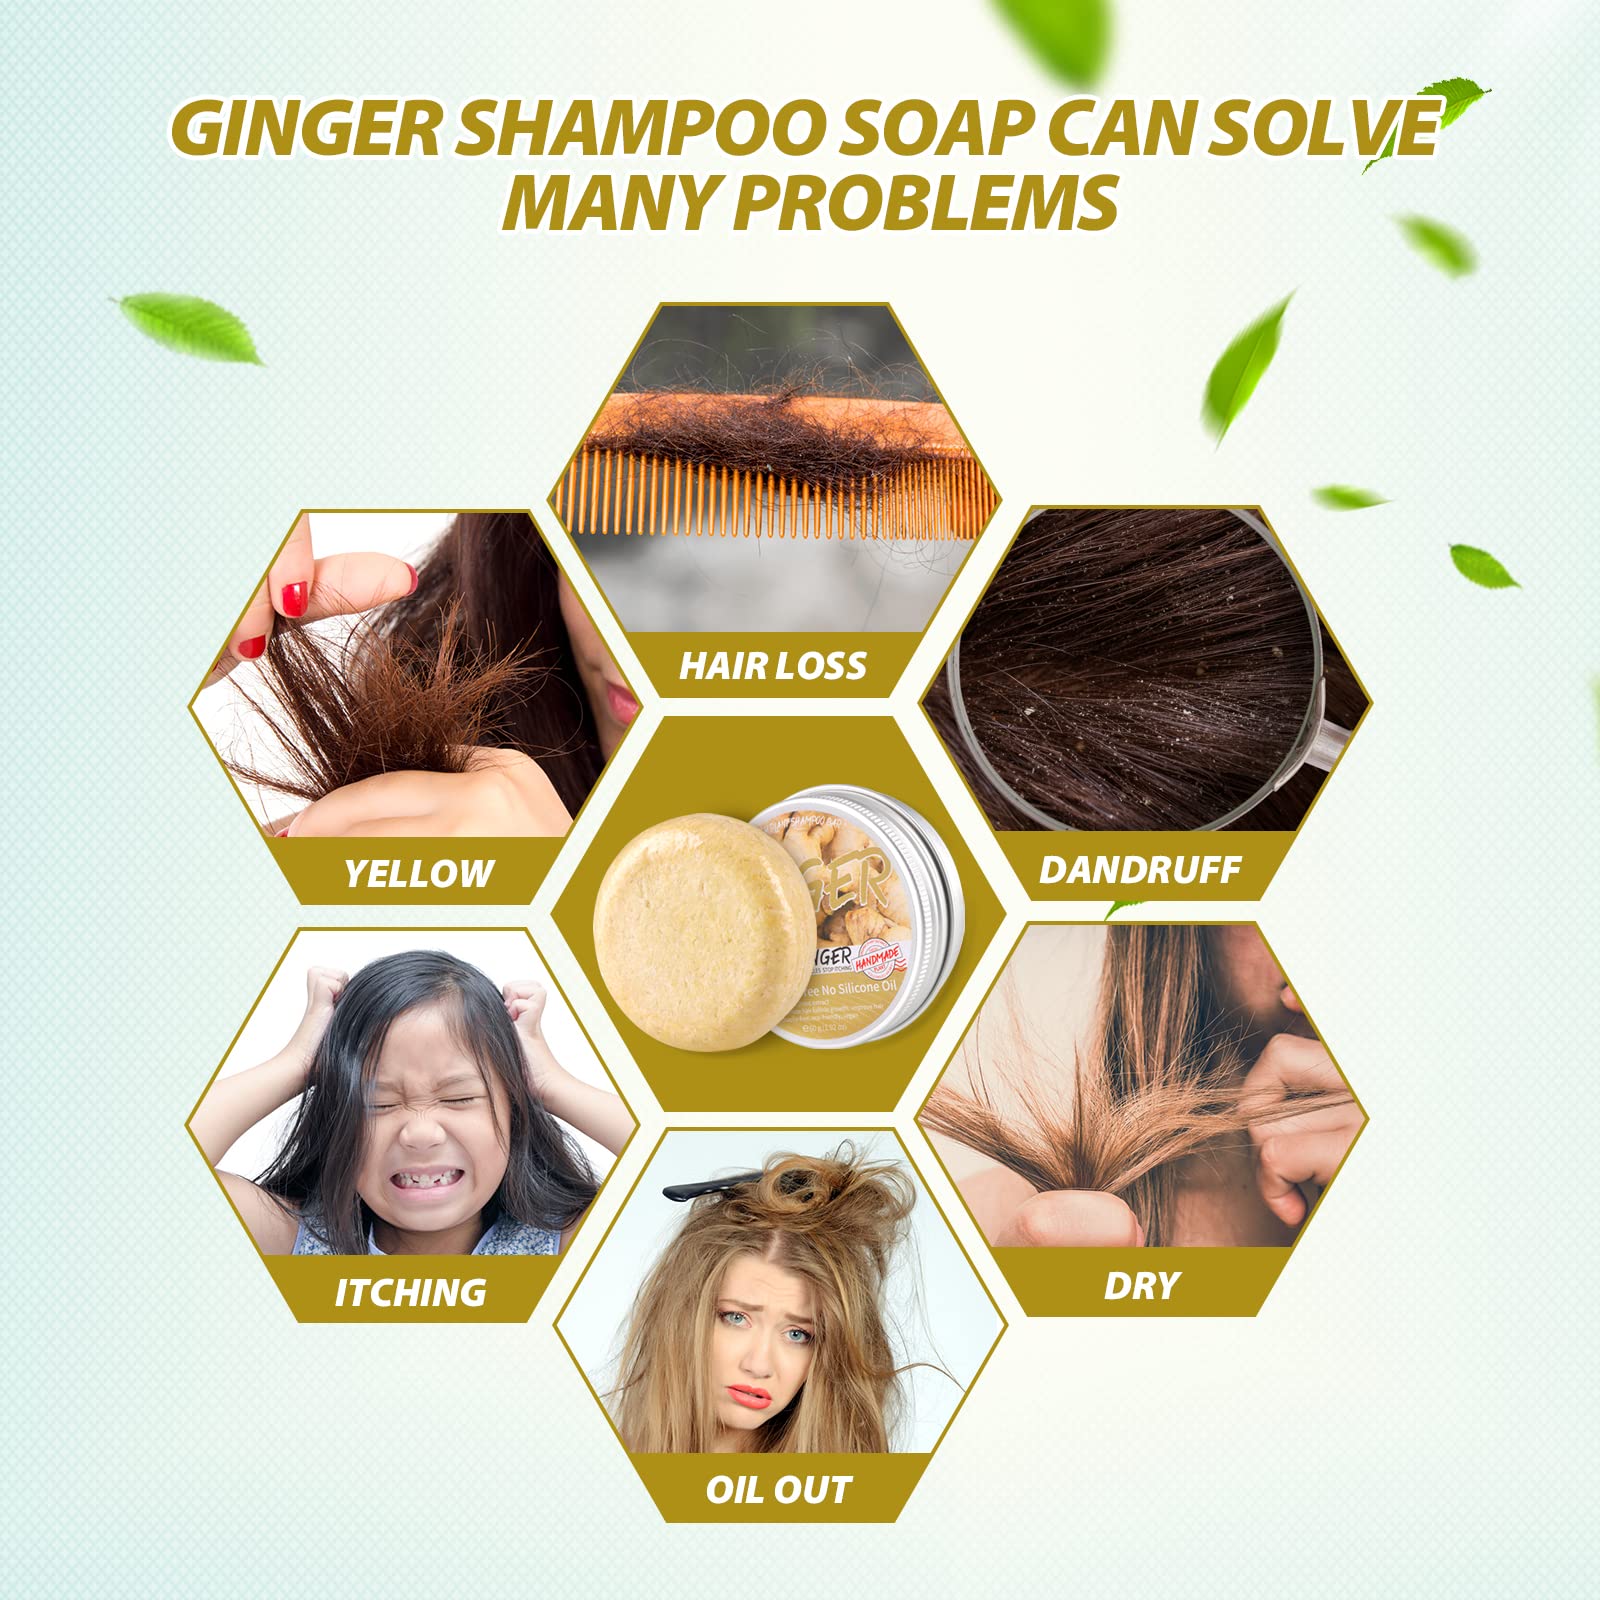 Zoreni 5 Pack Ginger Hair Regrowth Shampoo Bar, Anti Hair Loss Ginger Shampoo Soap, Natural Organic Ginger Shampoo Bar Promotes Hair Growth, Anti-dandruff and Anti-itching Ginger Bar Soap